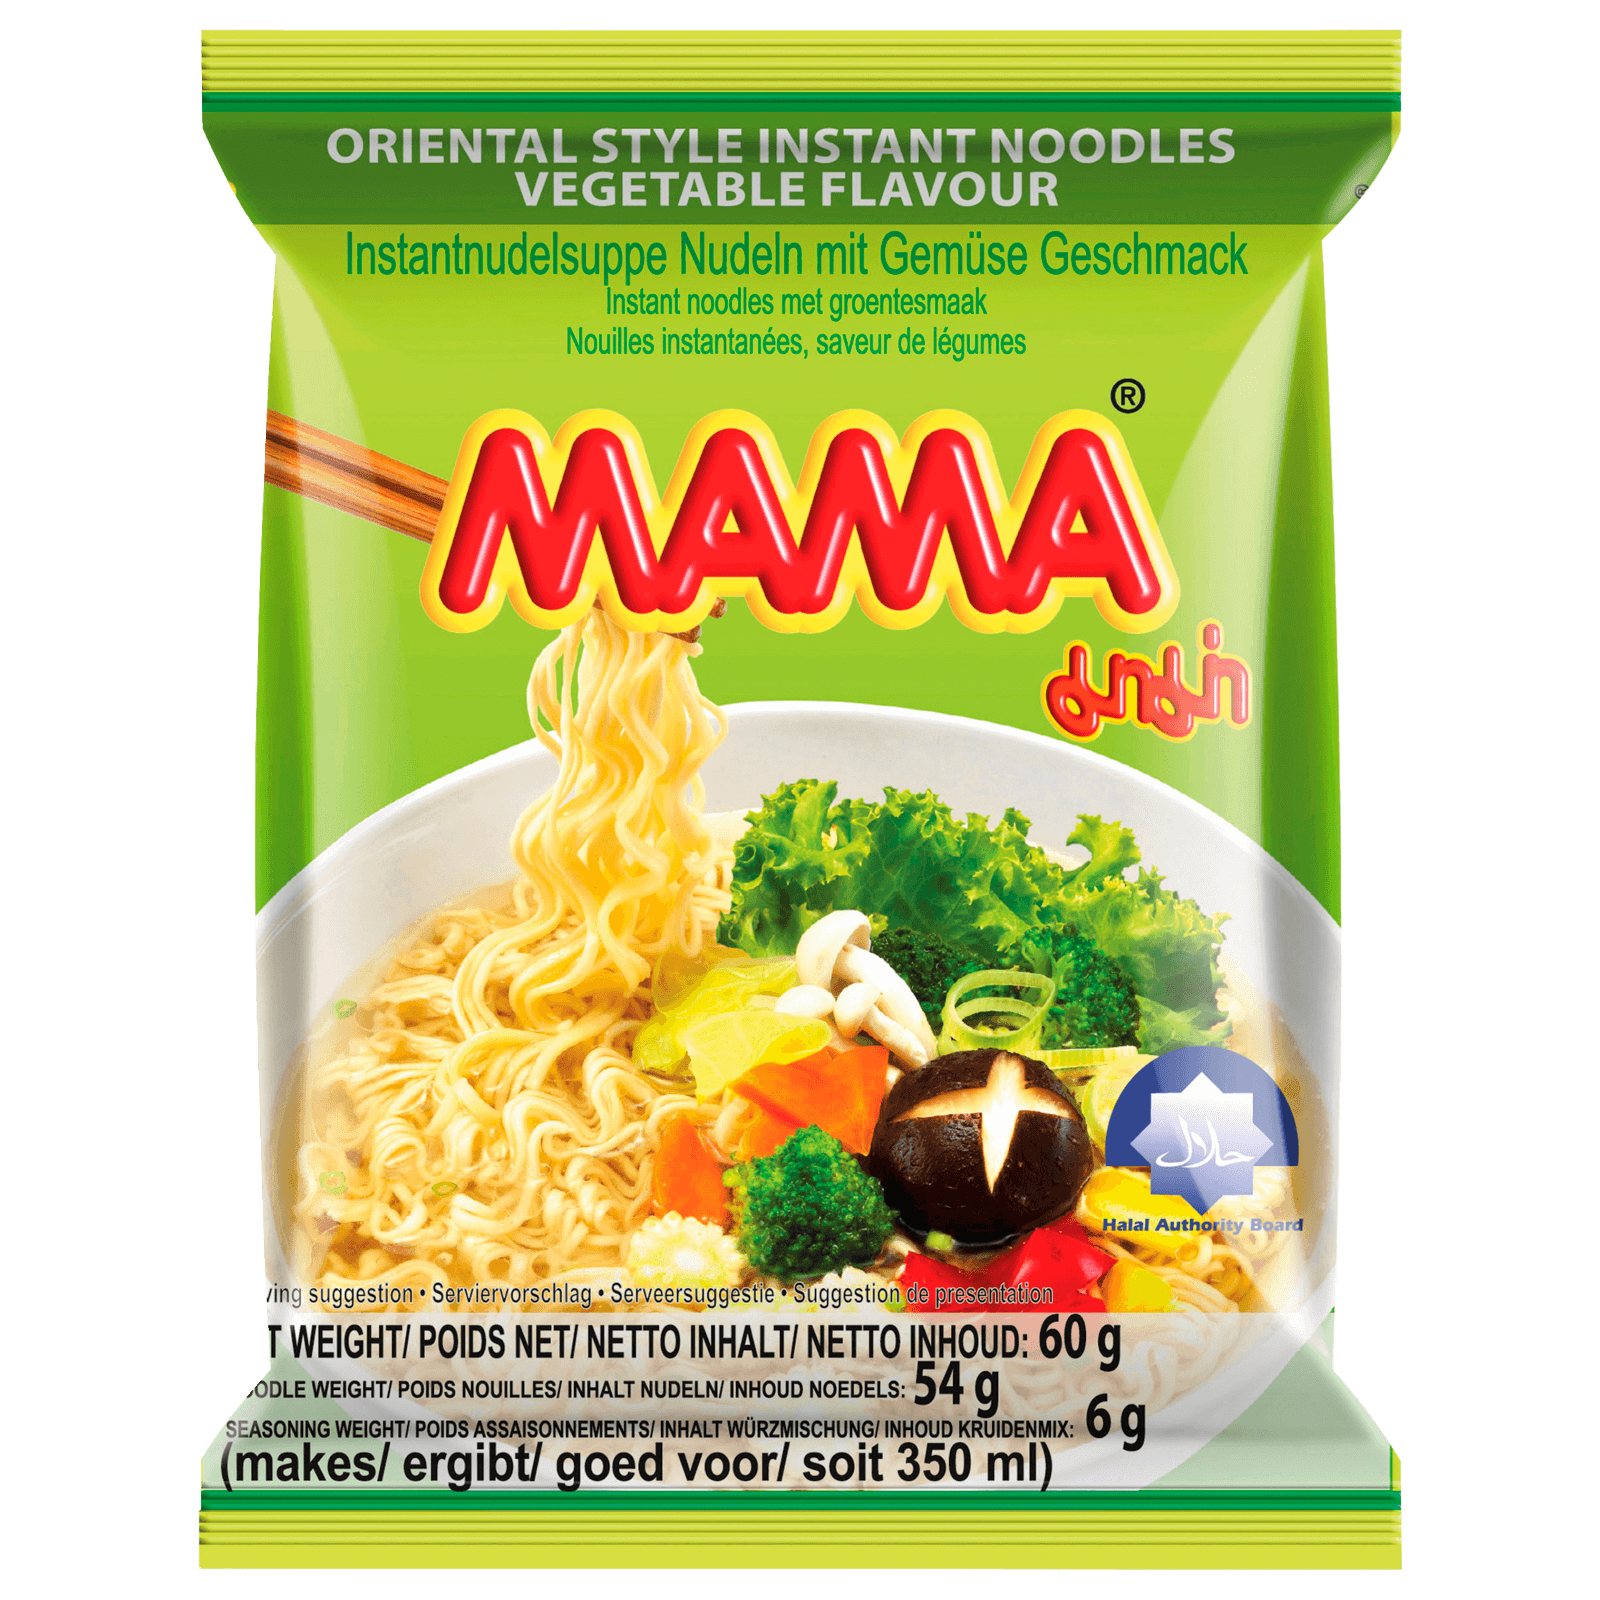 MAMA Instantnudelsuppe mit Gemüse Geschmack 60g  für 0.99 EUR